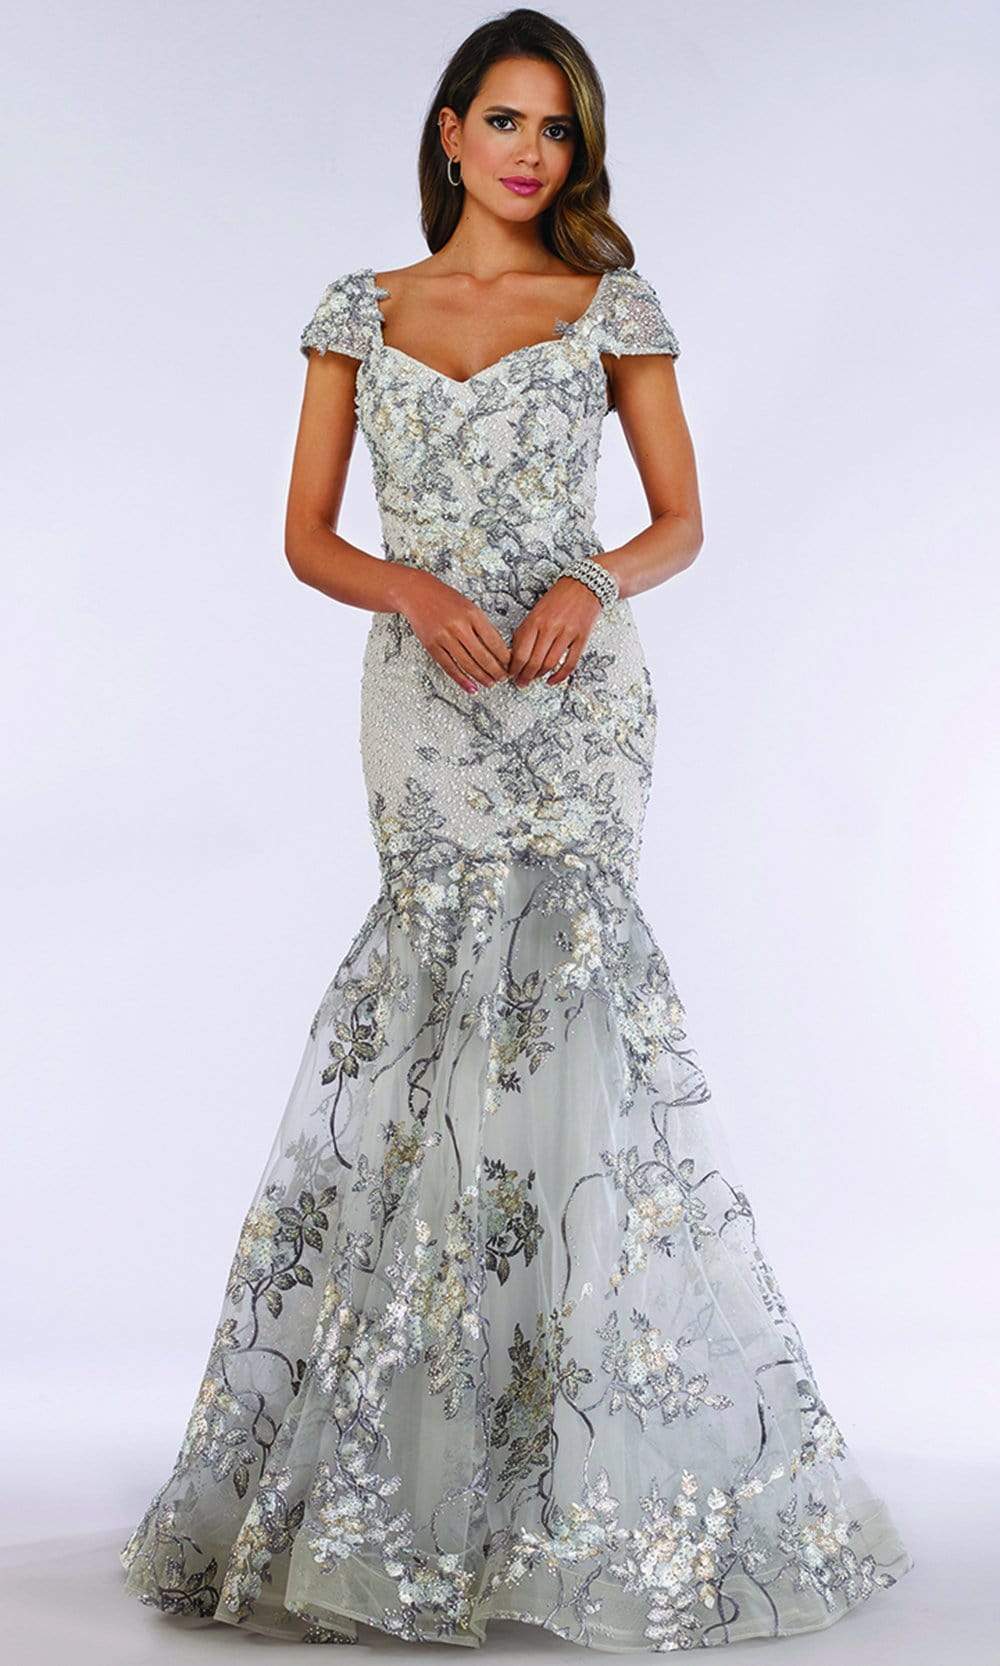 Lara Dresses - 29642 Short Sleeve Beaded Lace Mermaid Dress